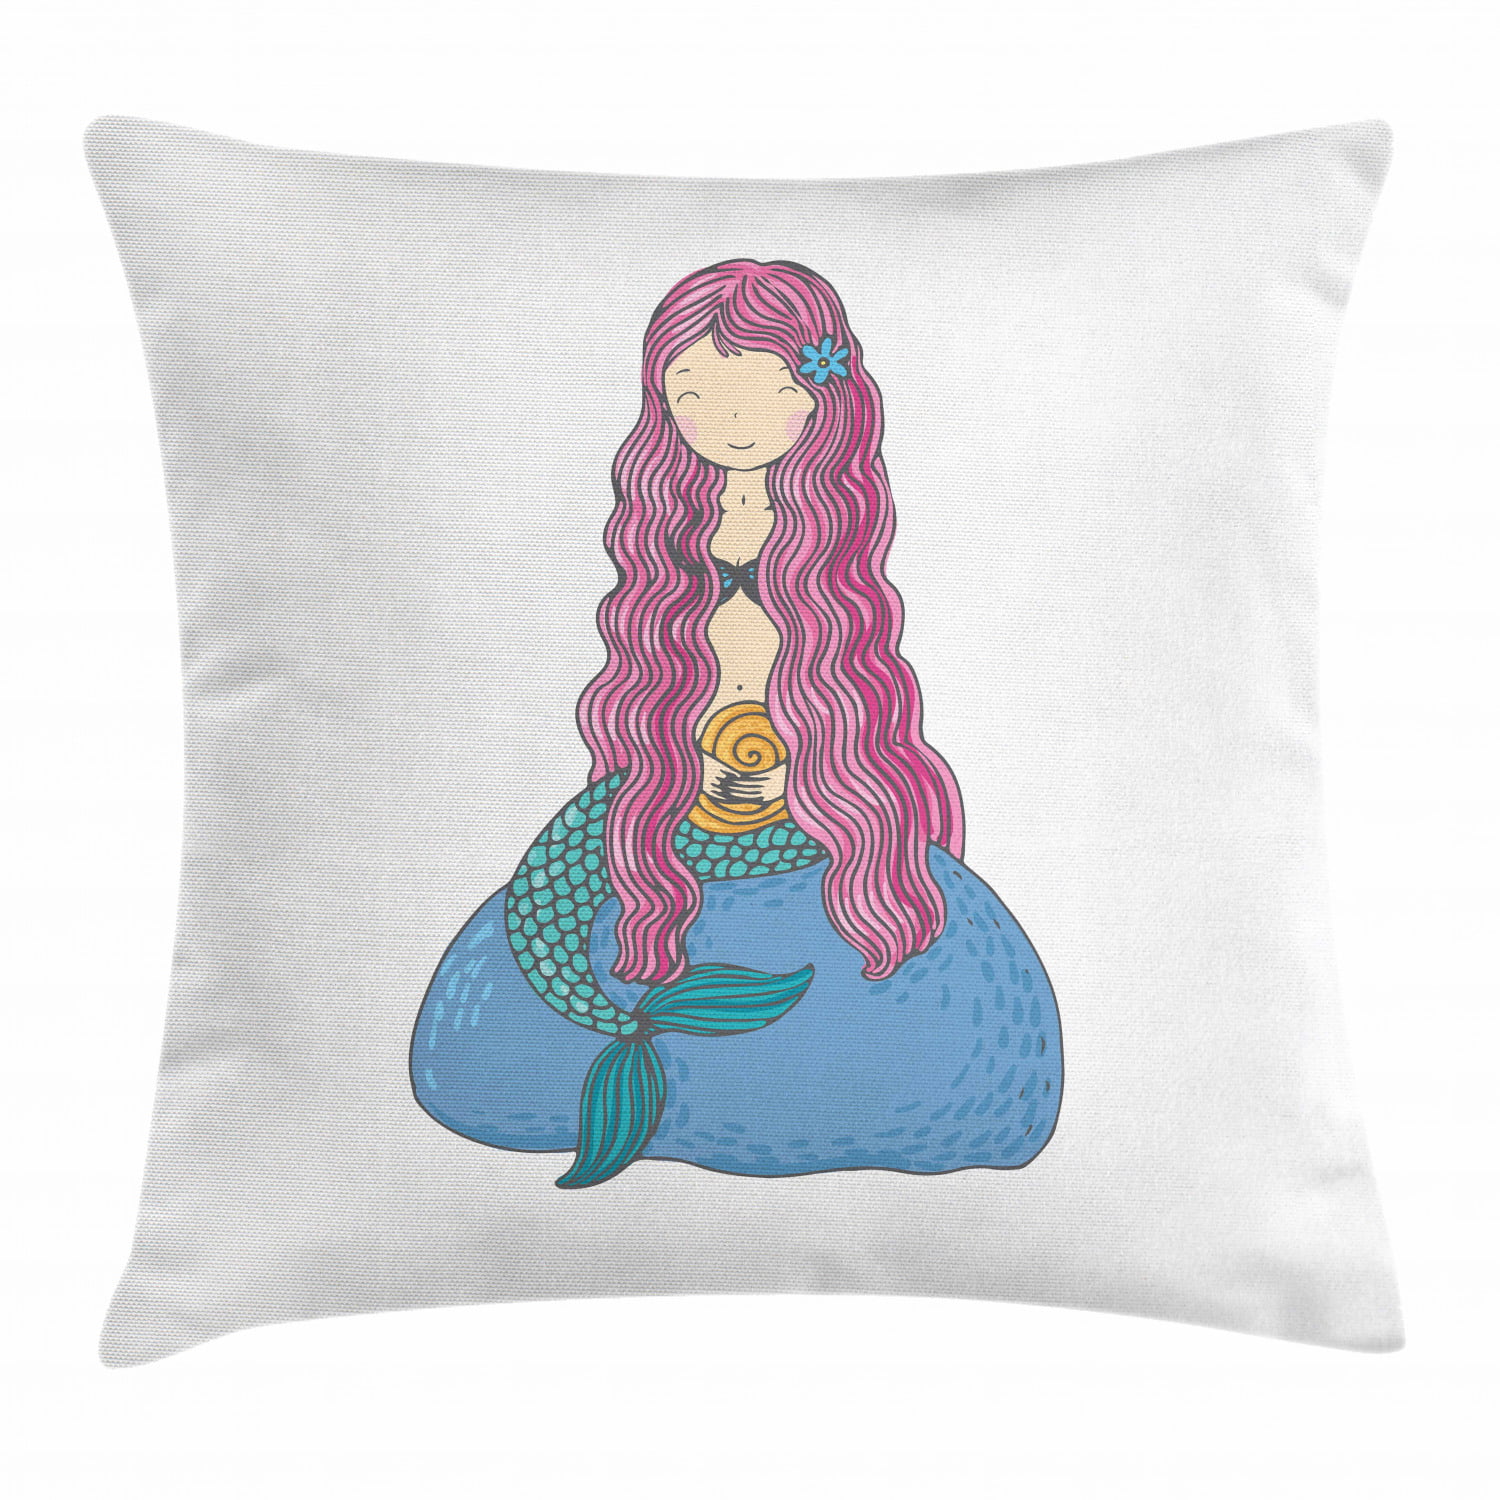 US Seller mermaid cushion cover cheap throw pillow covers 